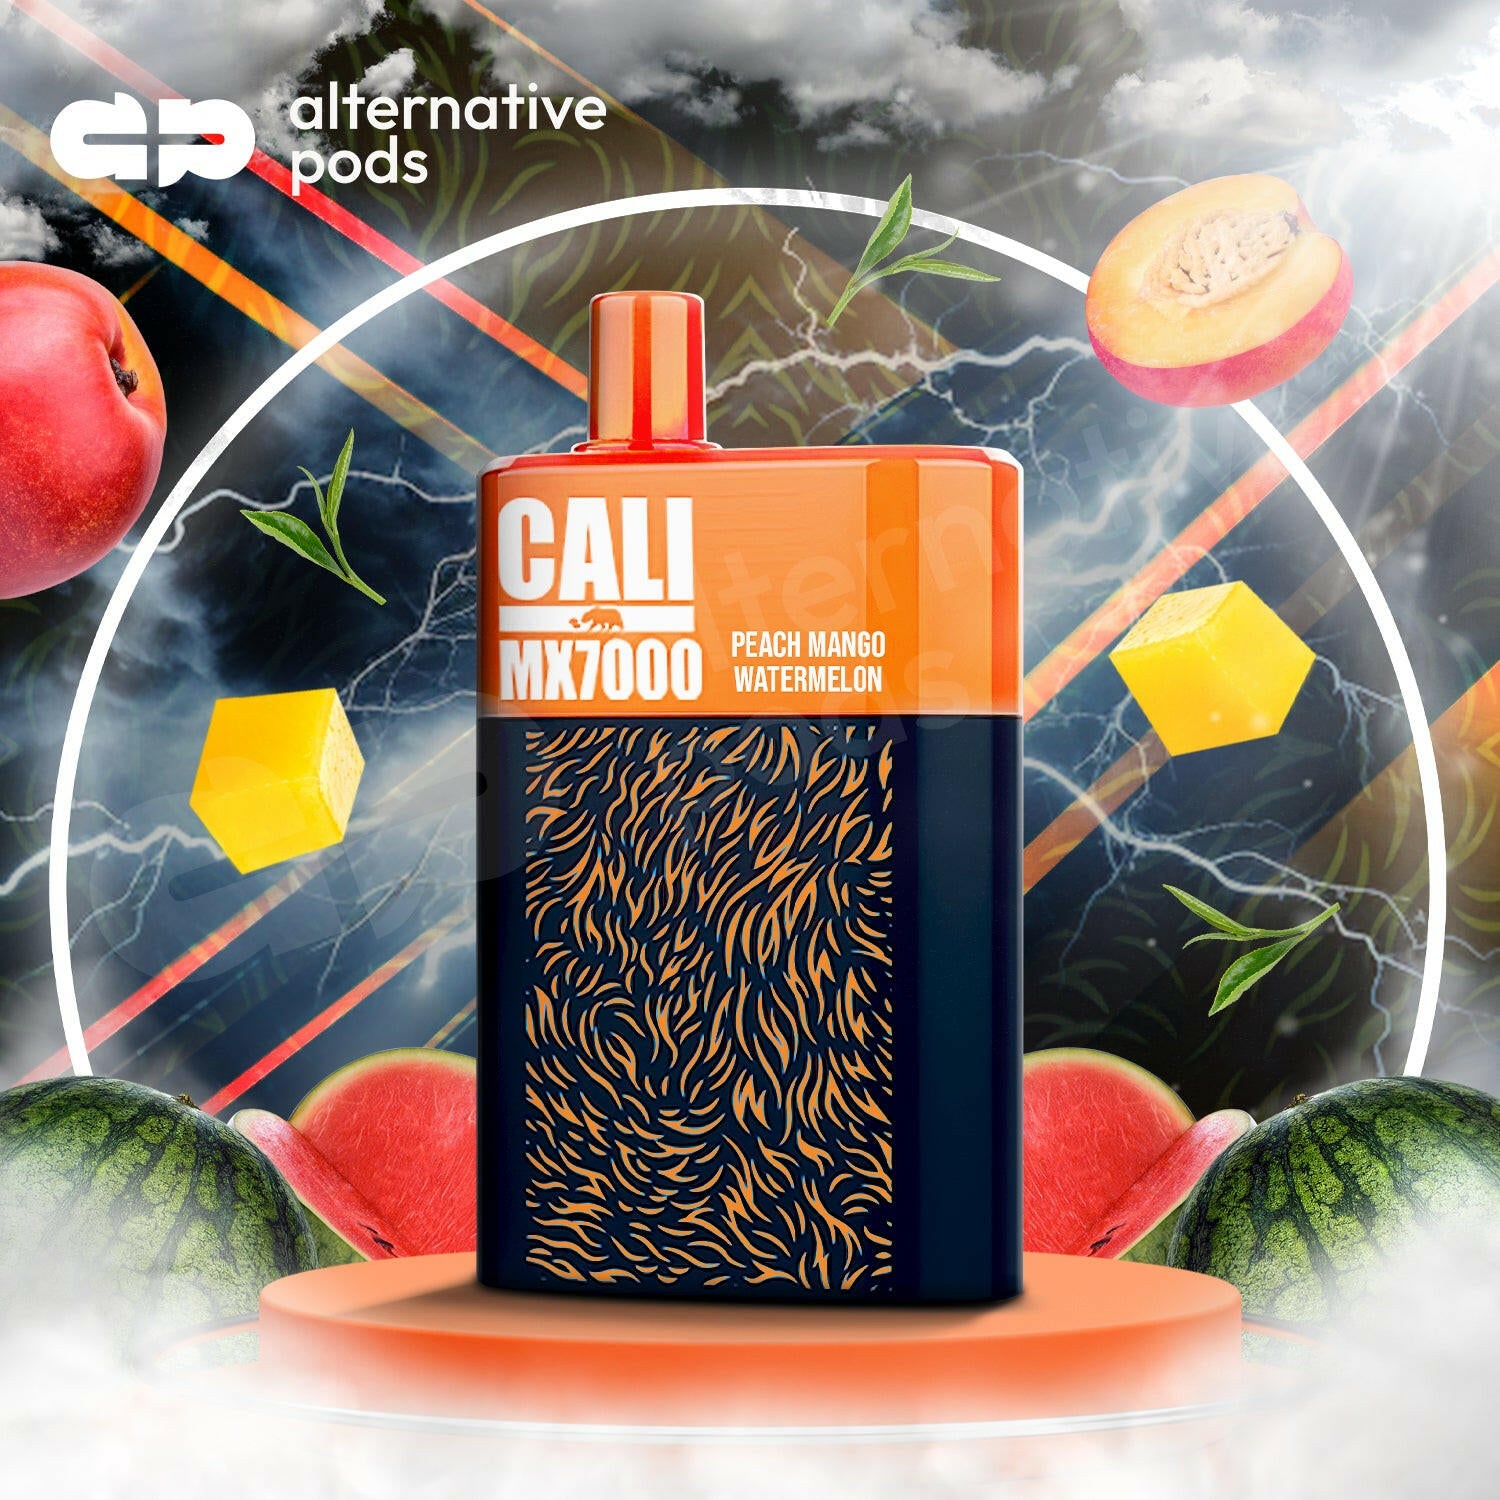 Cali MX7000 Puffs Disposable Vape - Peach Mango Watermelon